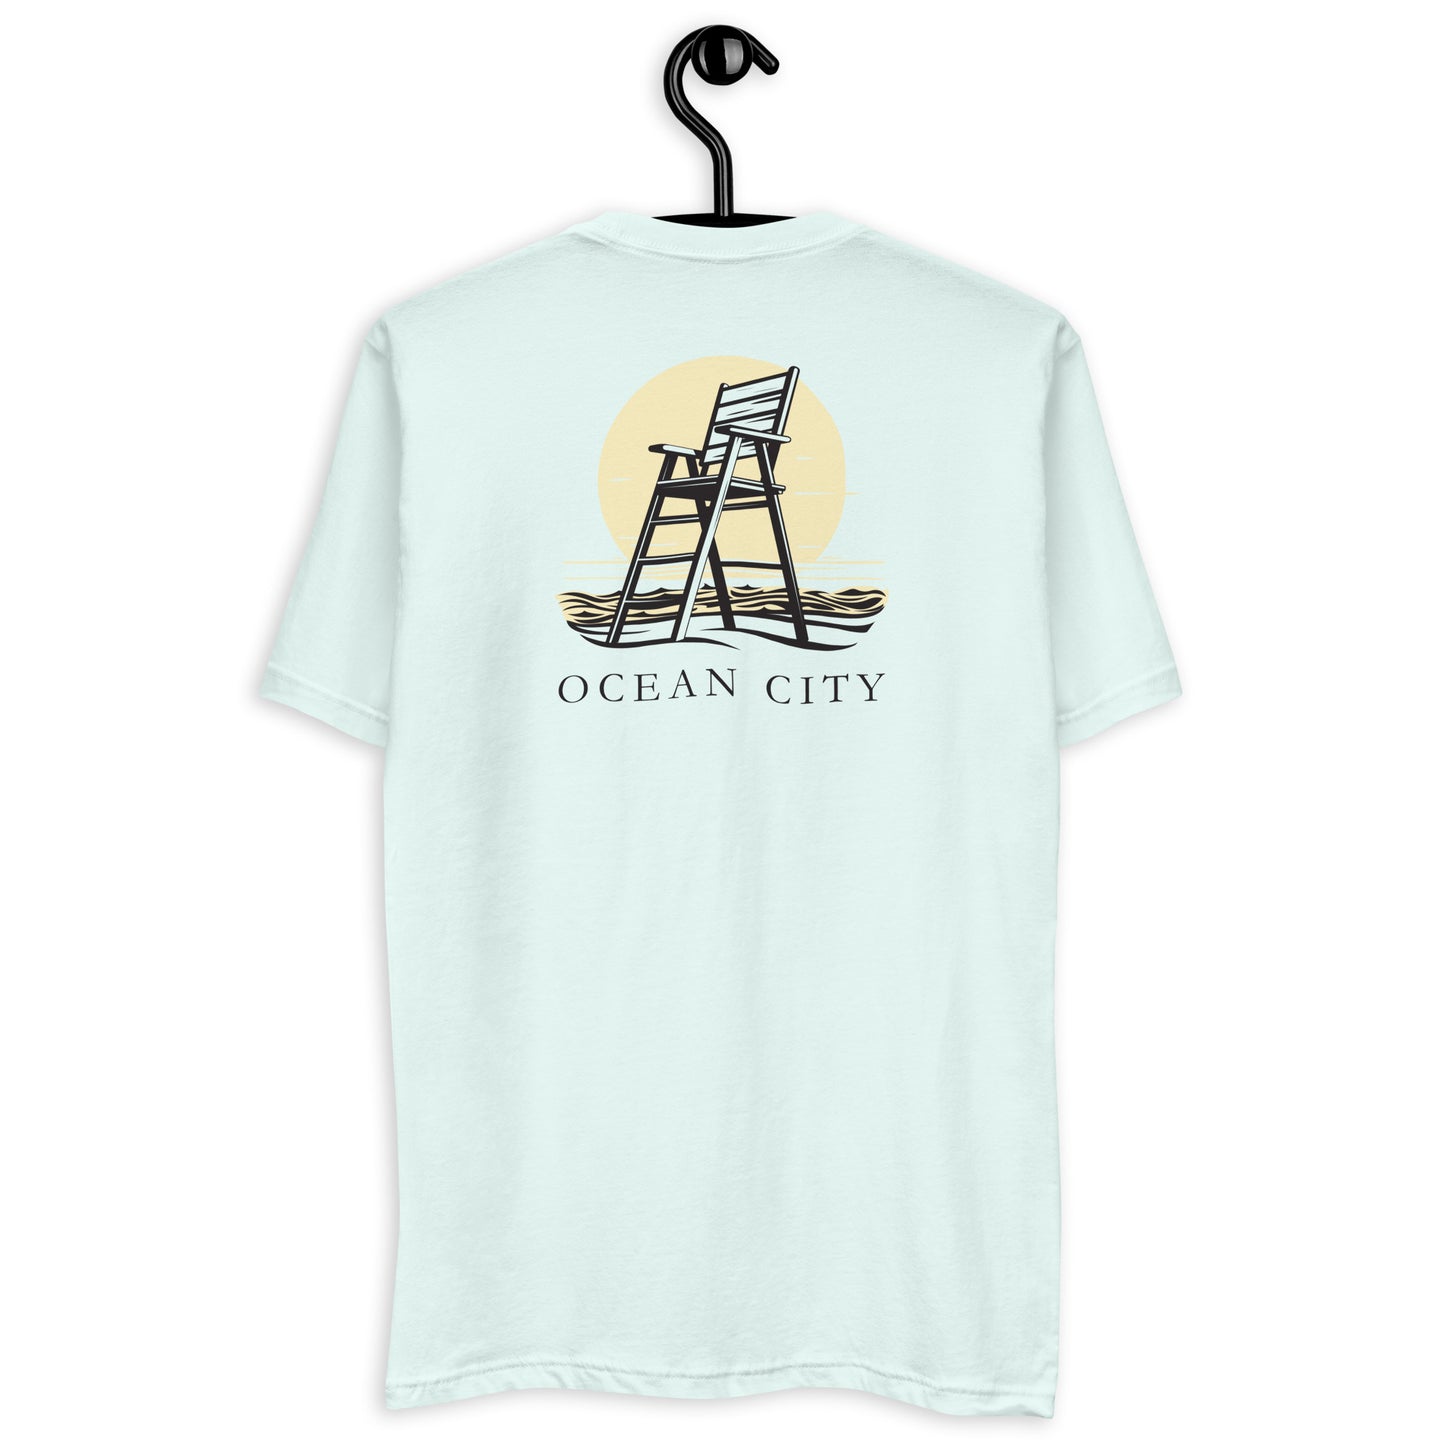 Ocean City 2Clr Short Sleeve T-shirt